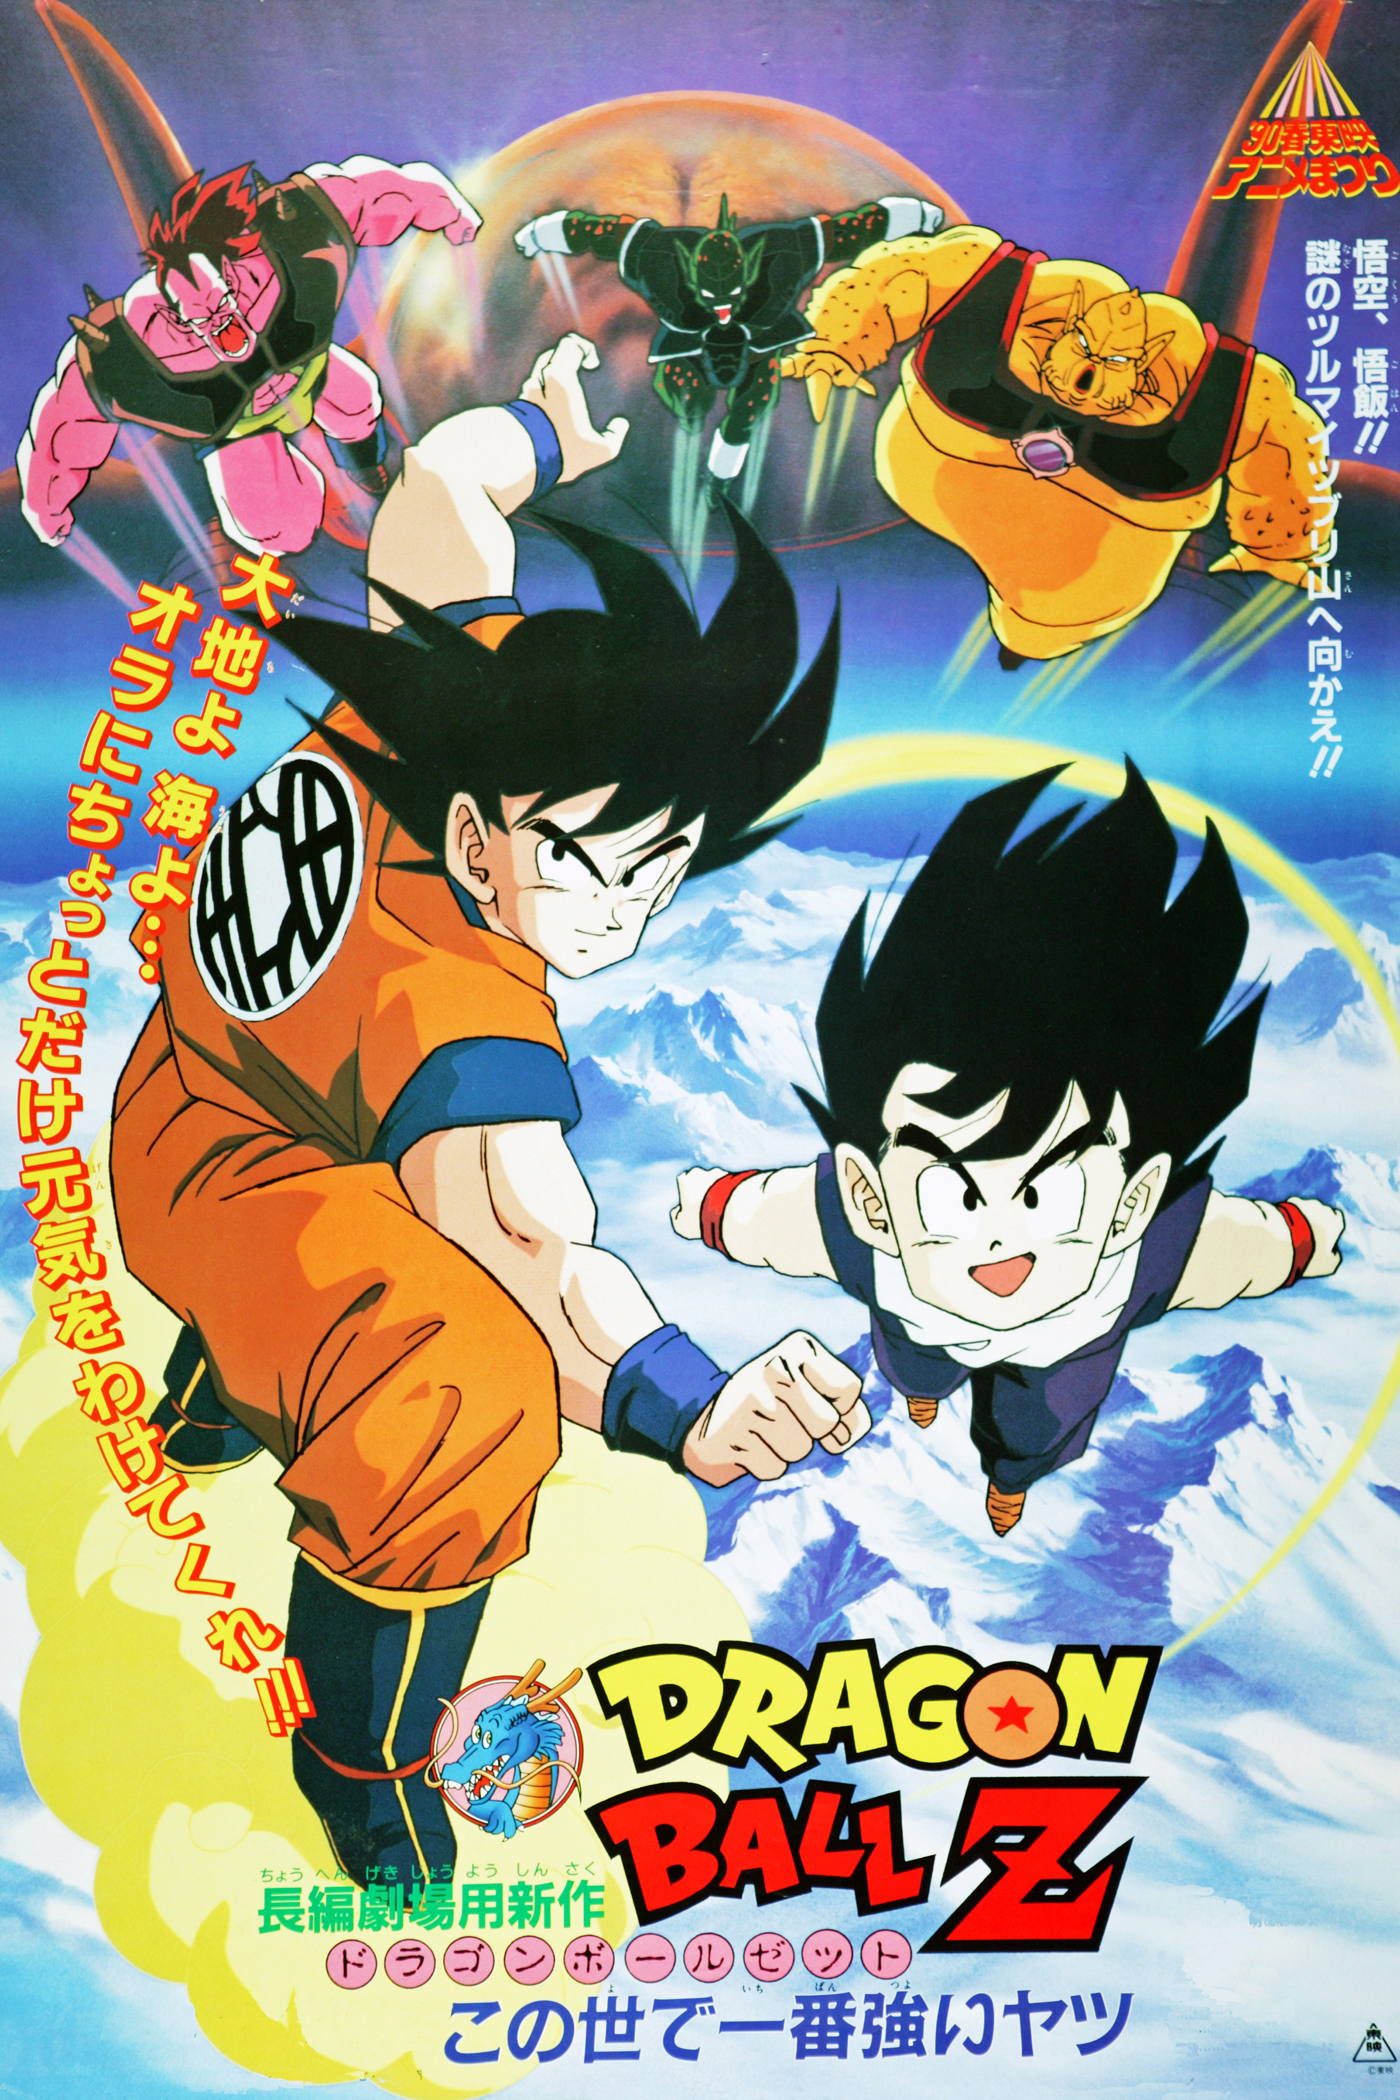 Dragon Ball Z movie 2 | Japanese Anime Wiki | FANDOM powered by Wikia